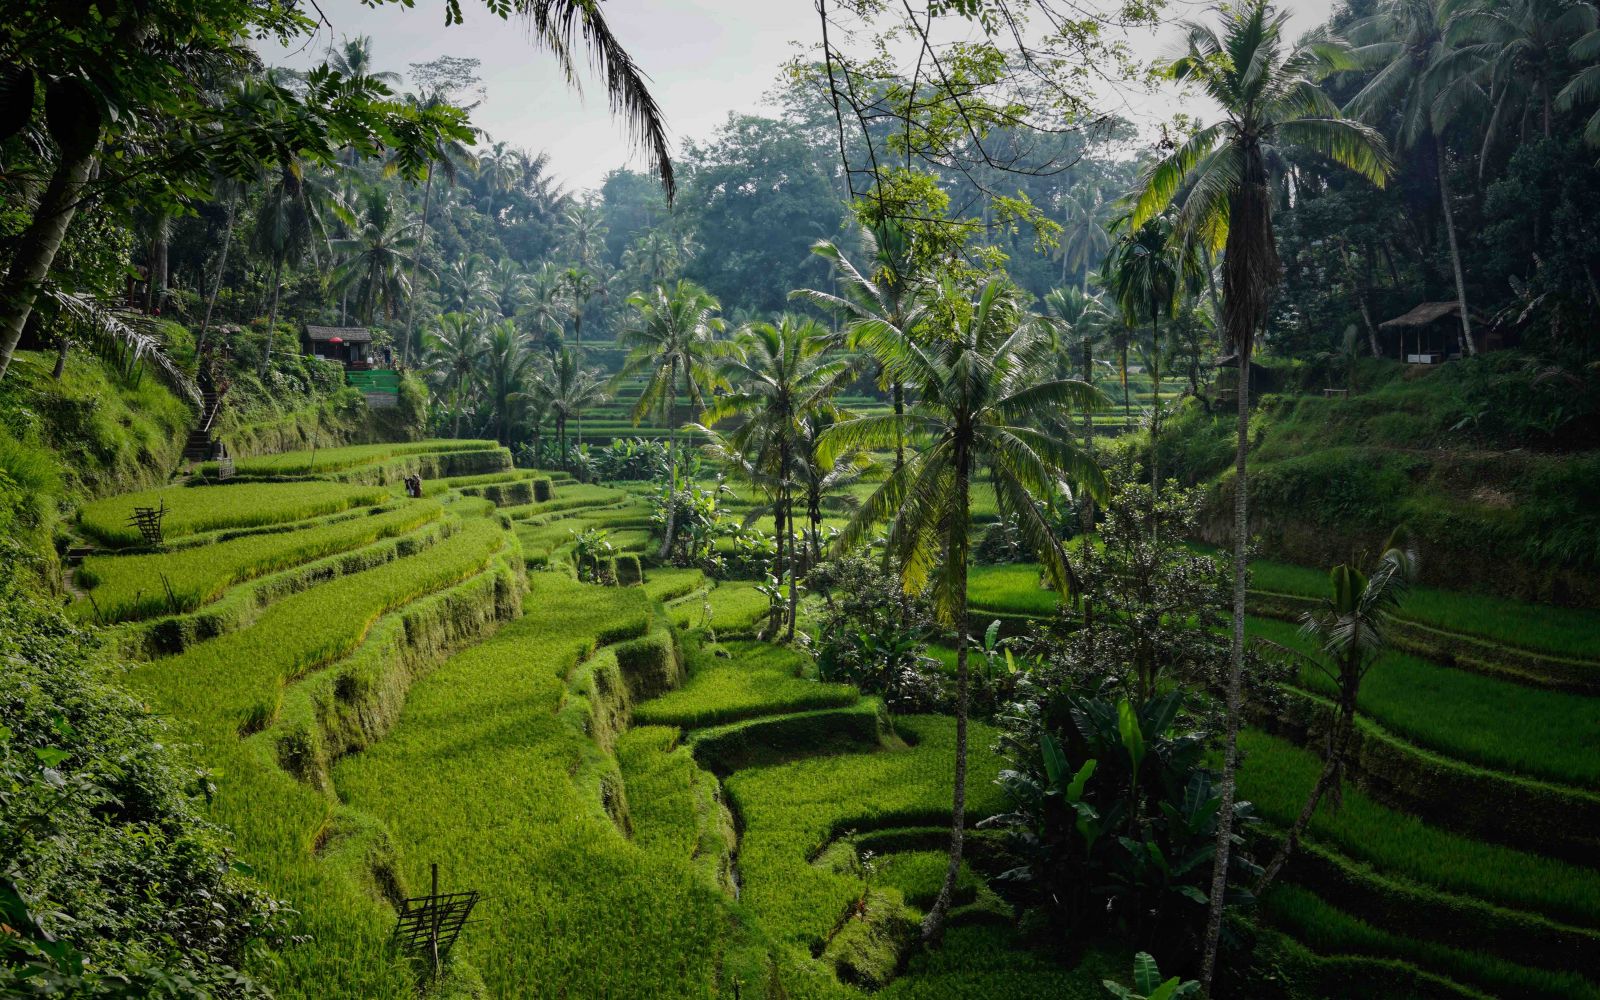 Viaggio di gruppo Bali e Indonesia